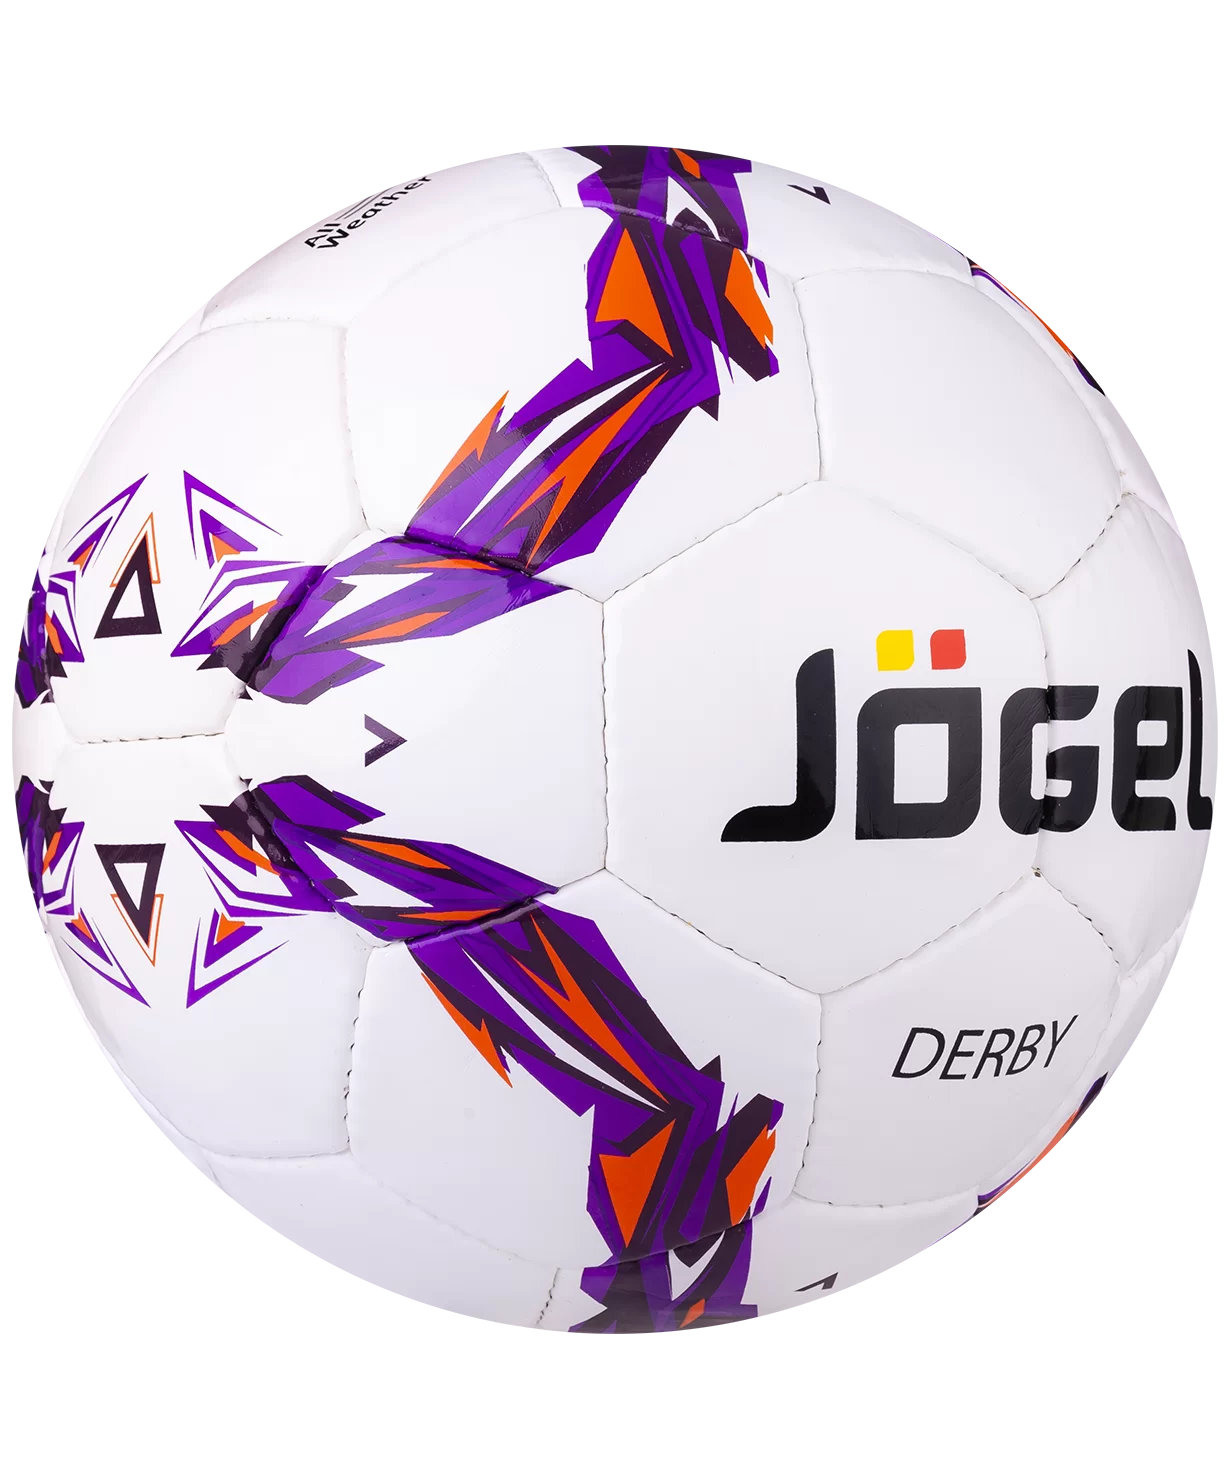 Реальное фото Мяч футбольный Jogel JS-560 Derby №5 12405 от магазина СпортСЕ